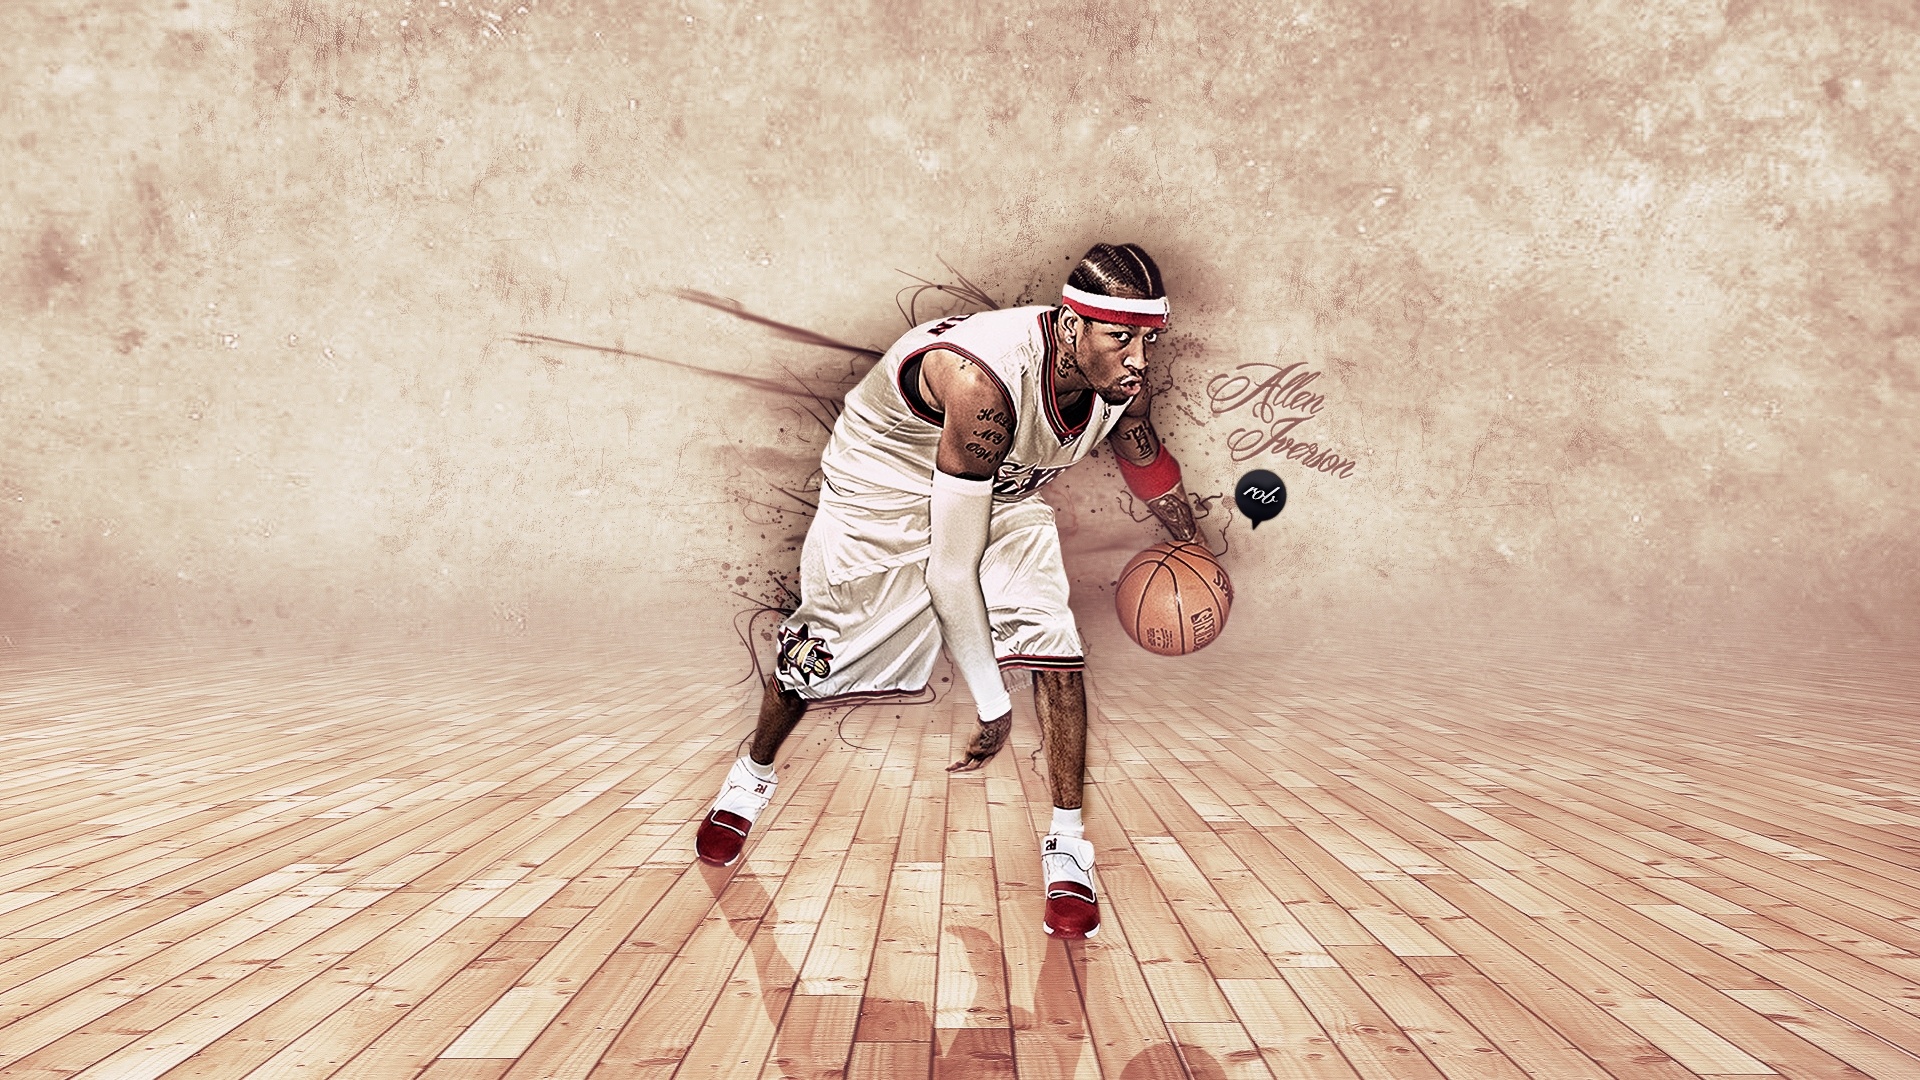 阿伦艾弗森经典无水印壁纸_NBA球星阿伦艾弗森主题手机壁纸_三千图片网